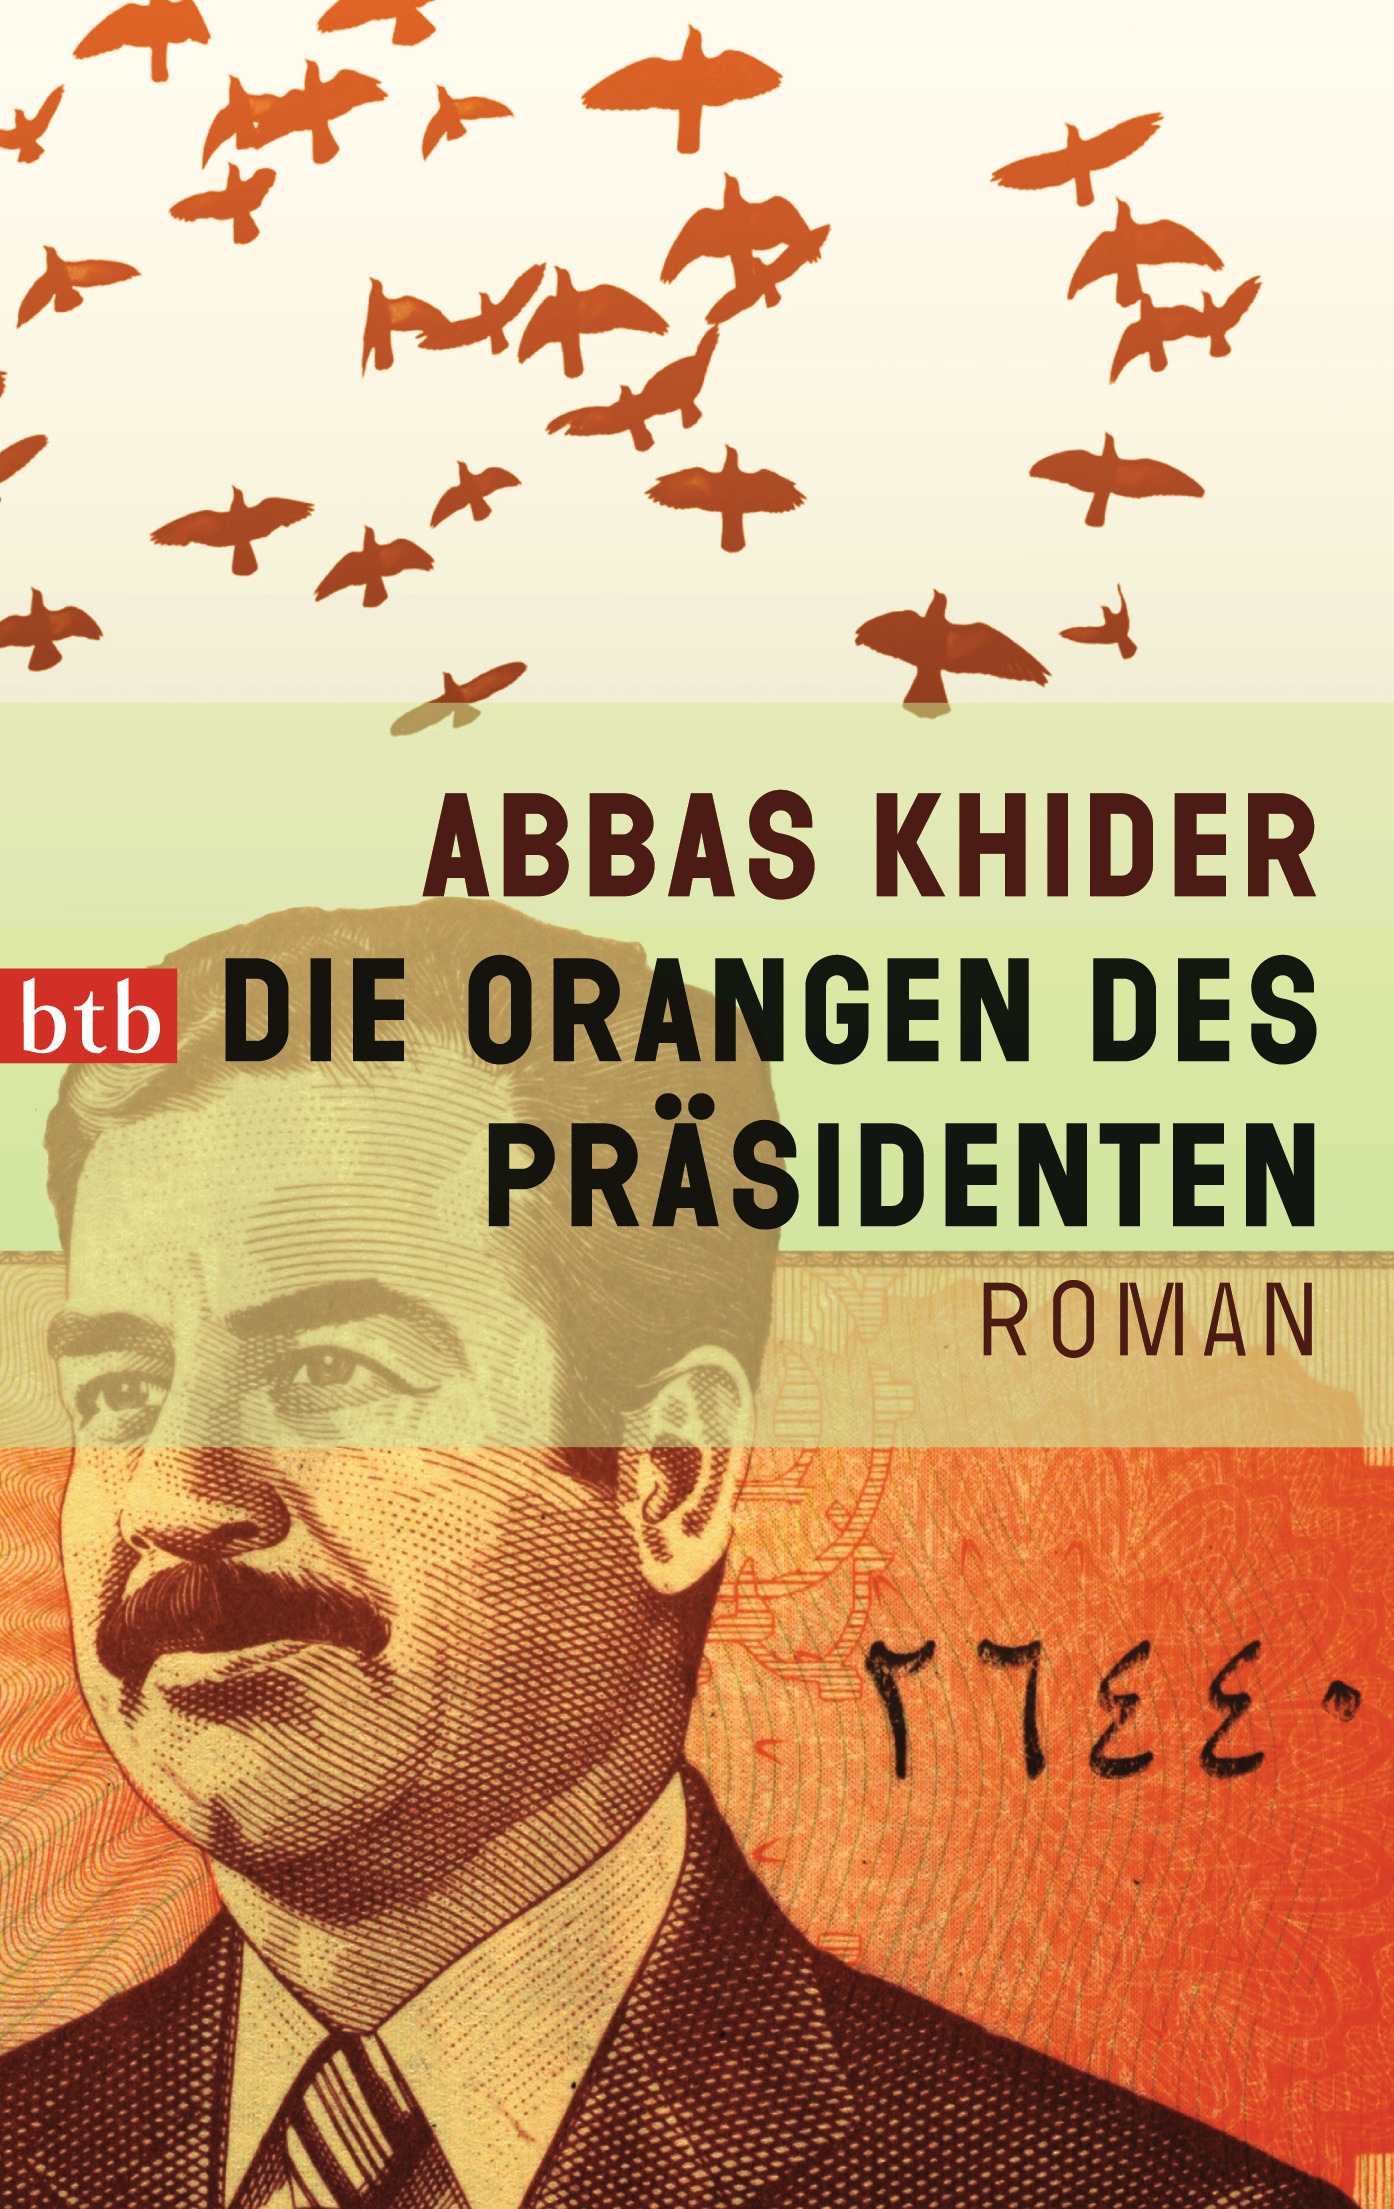 Die Orangen des Praesidenten von Abbas Khider